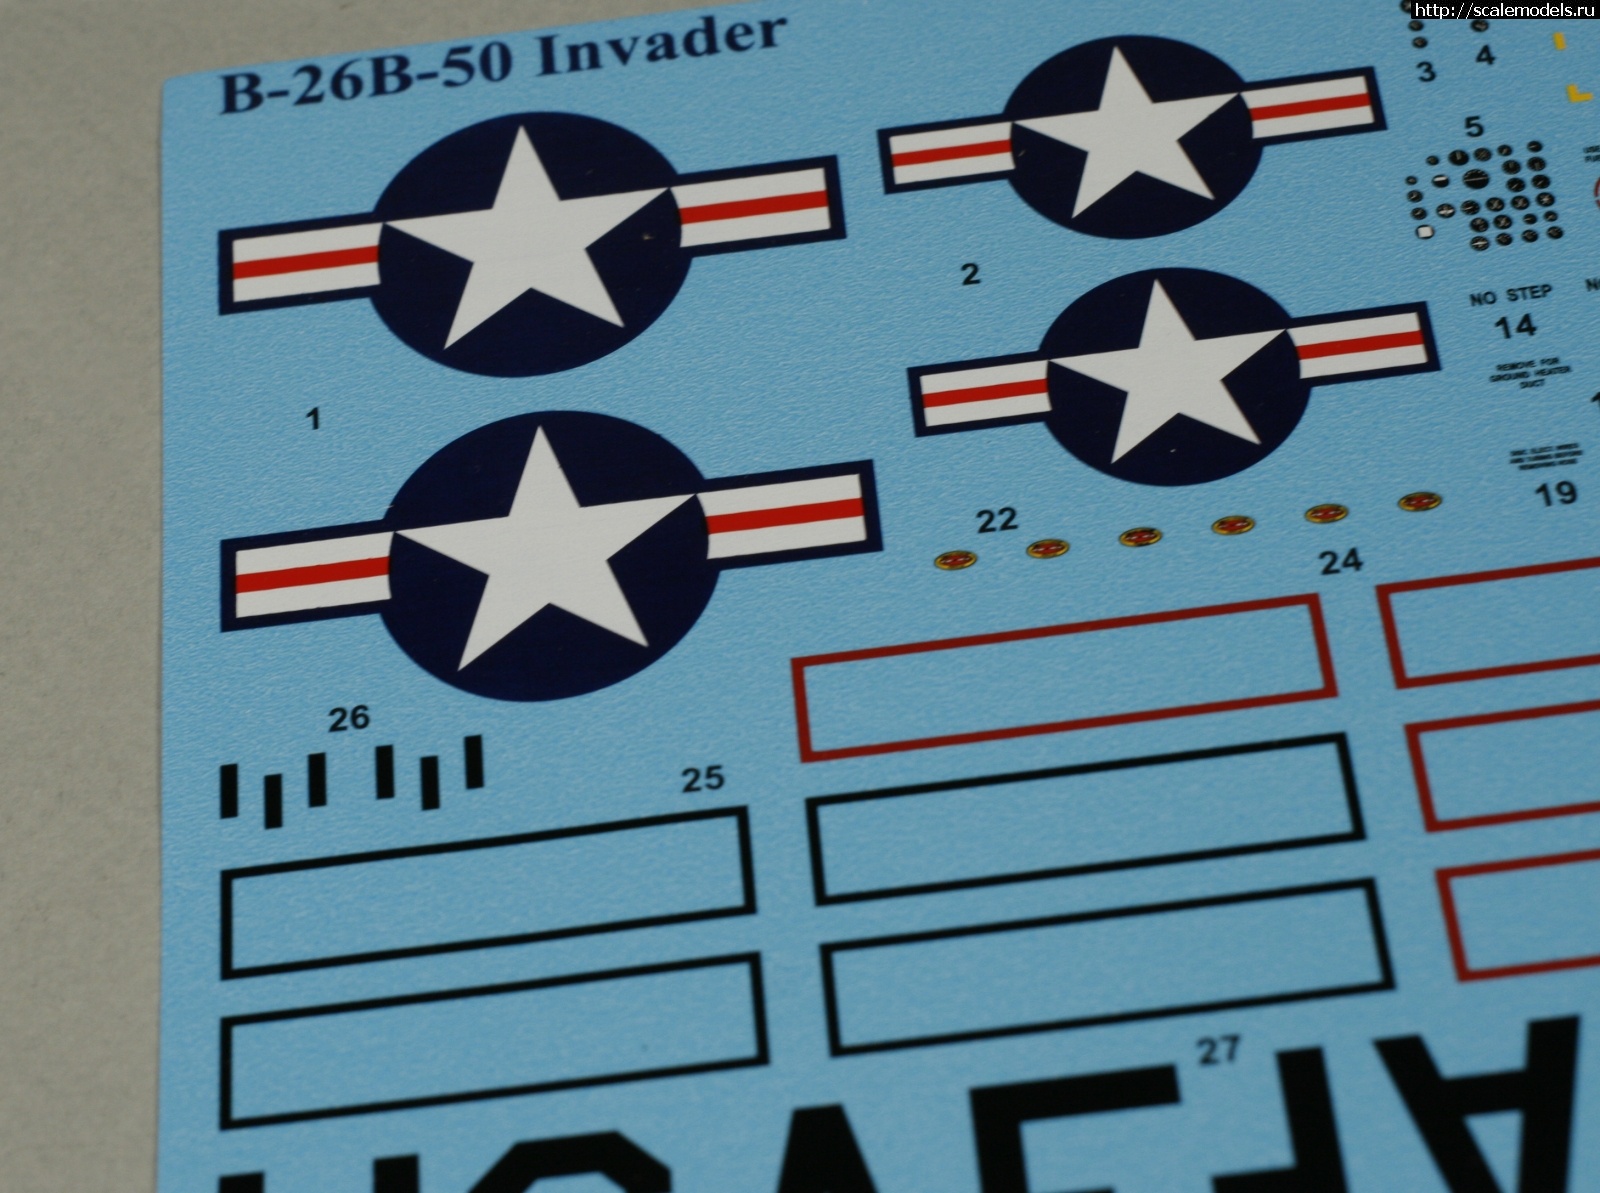 ICM B-26B-50 "Invader" 1/48   